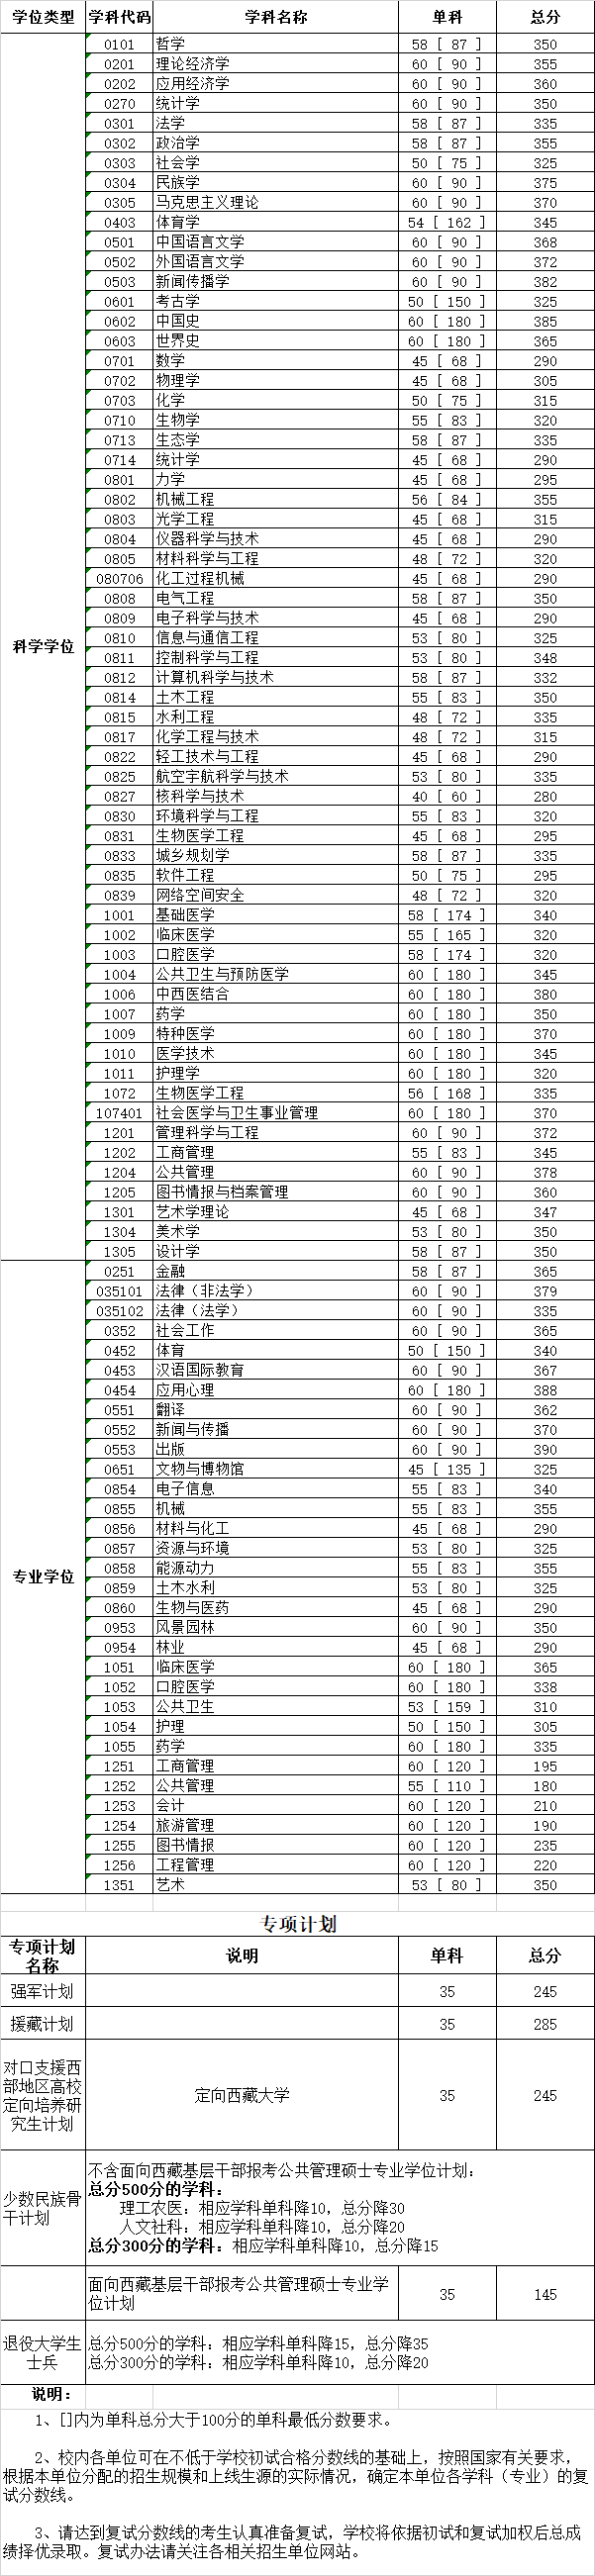 2020四川大学考研分数线(研究生复试分数线)